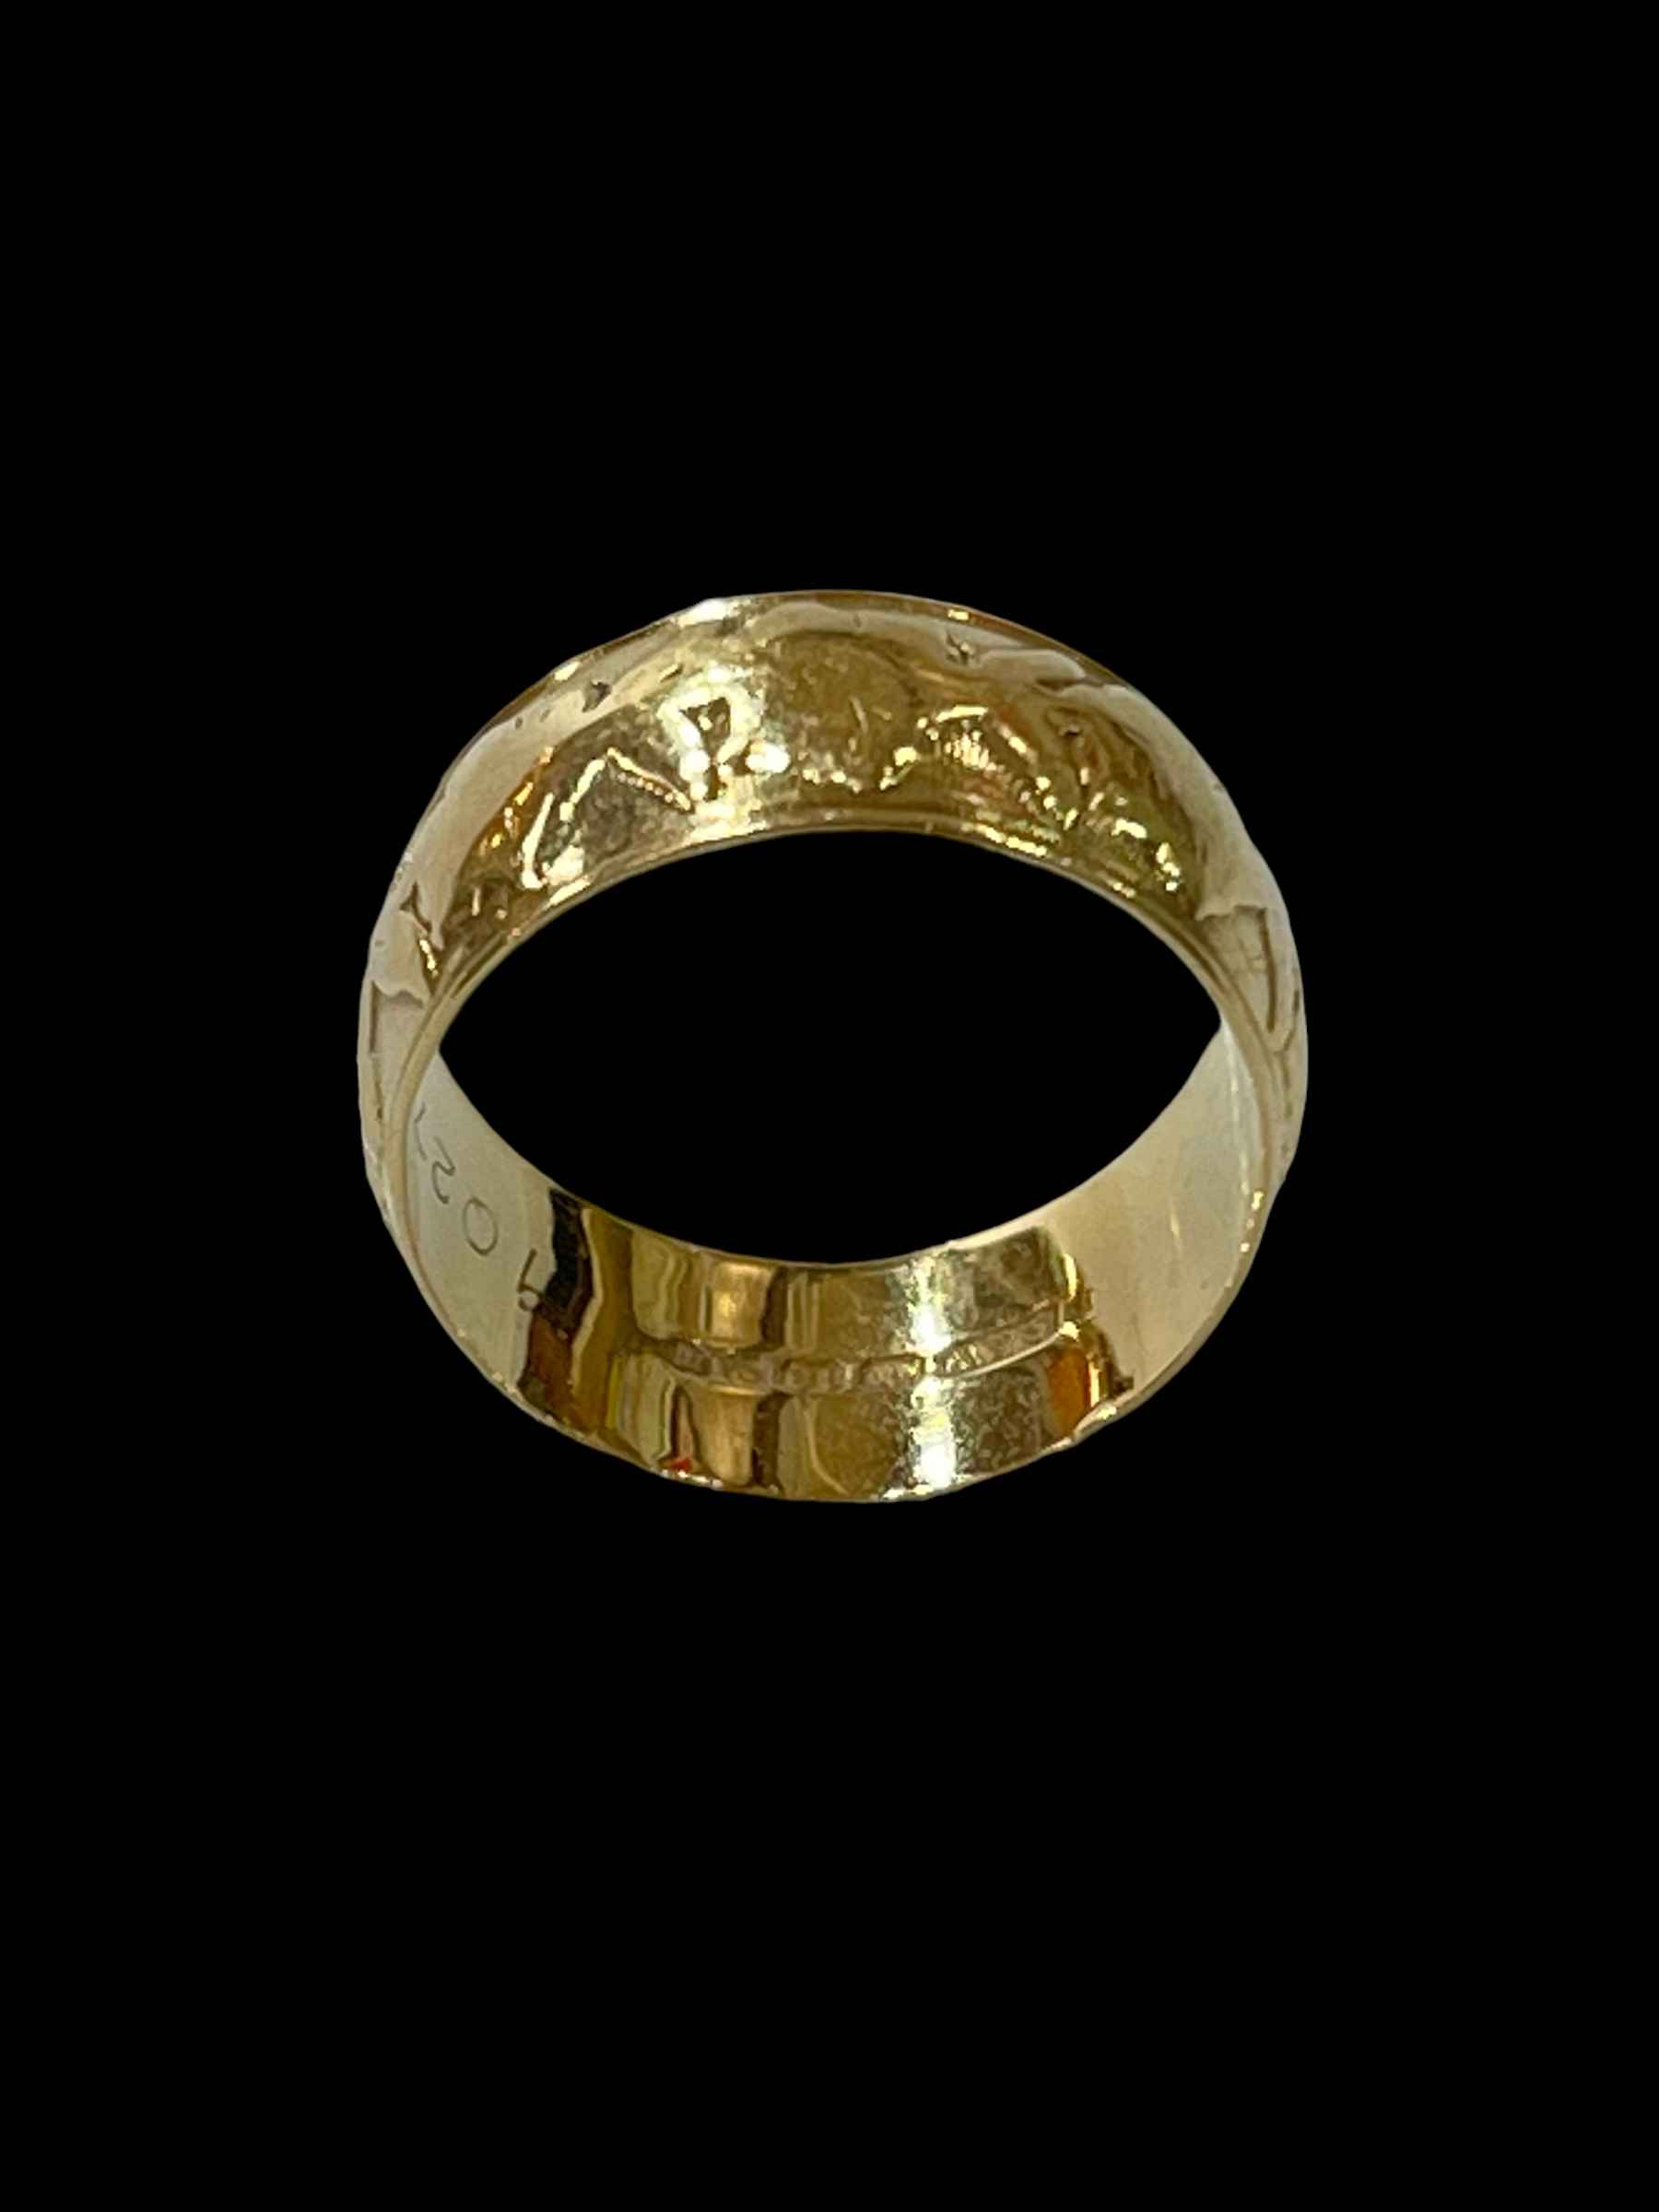 18 carat gold wedding band ring. - Image 2 of 2